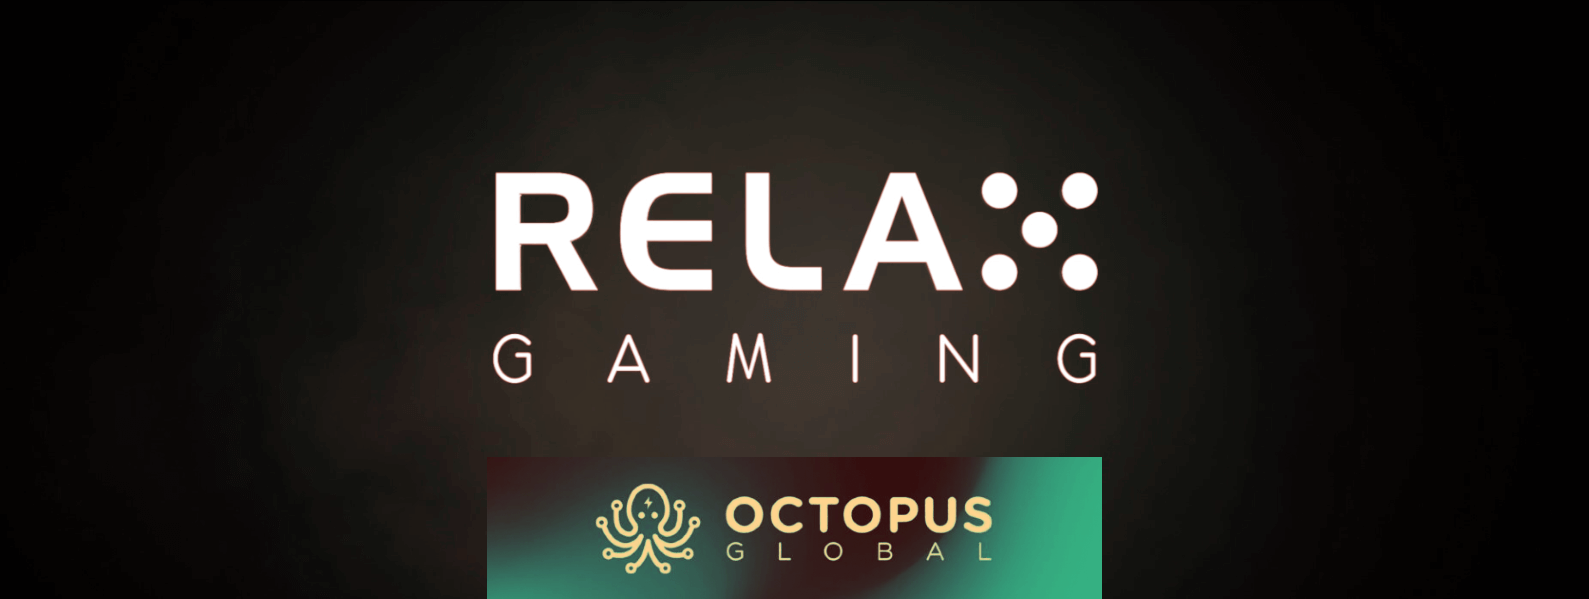 Η Relax Gaming συνεργάζεται με την Octopus Global